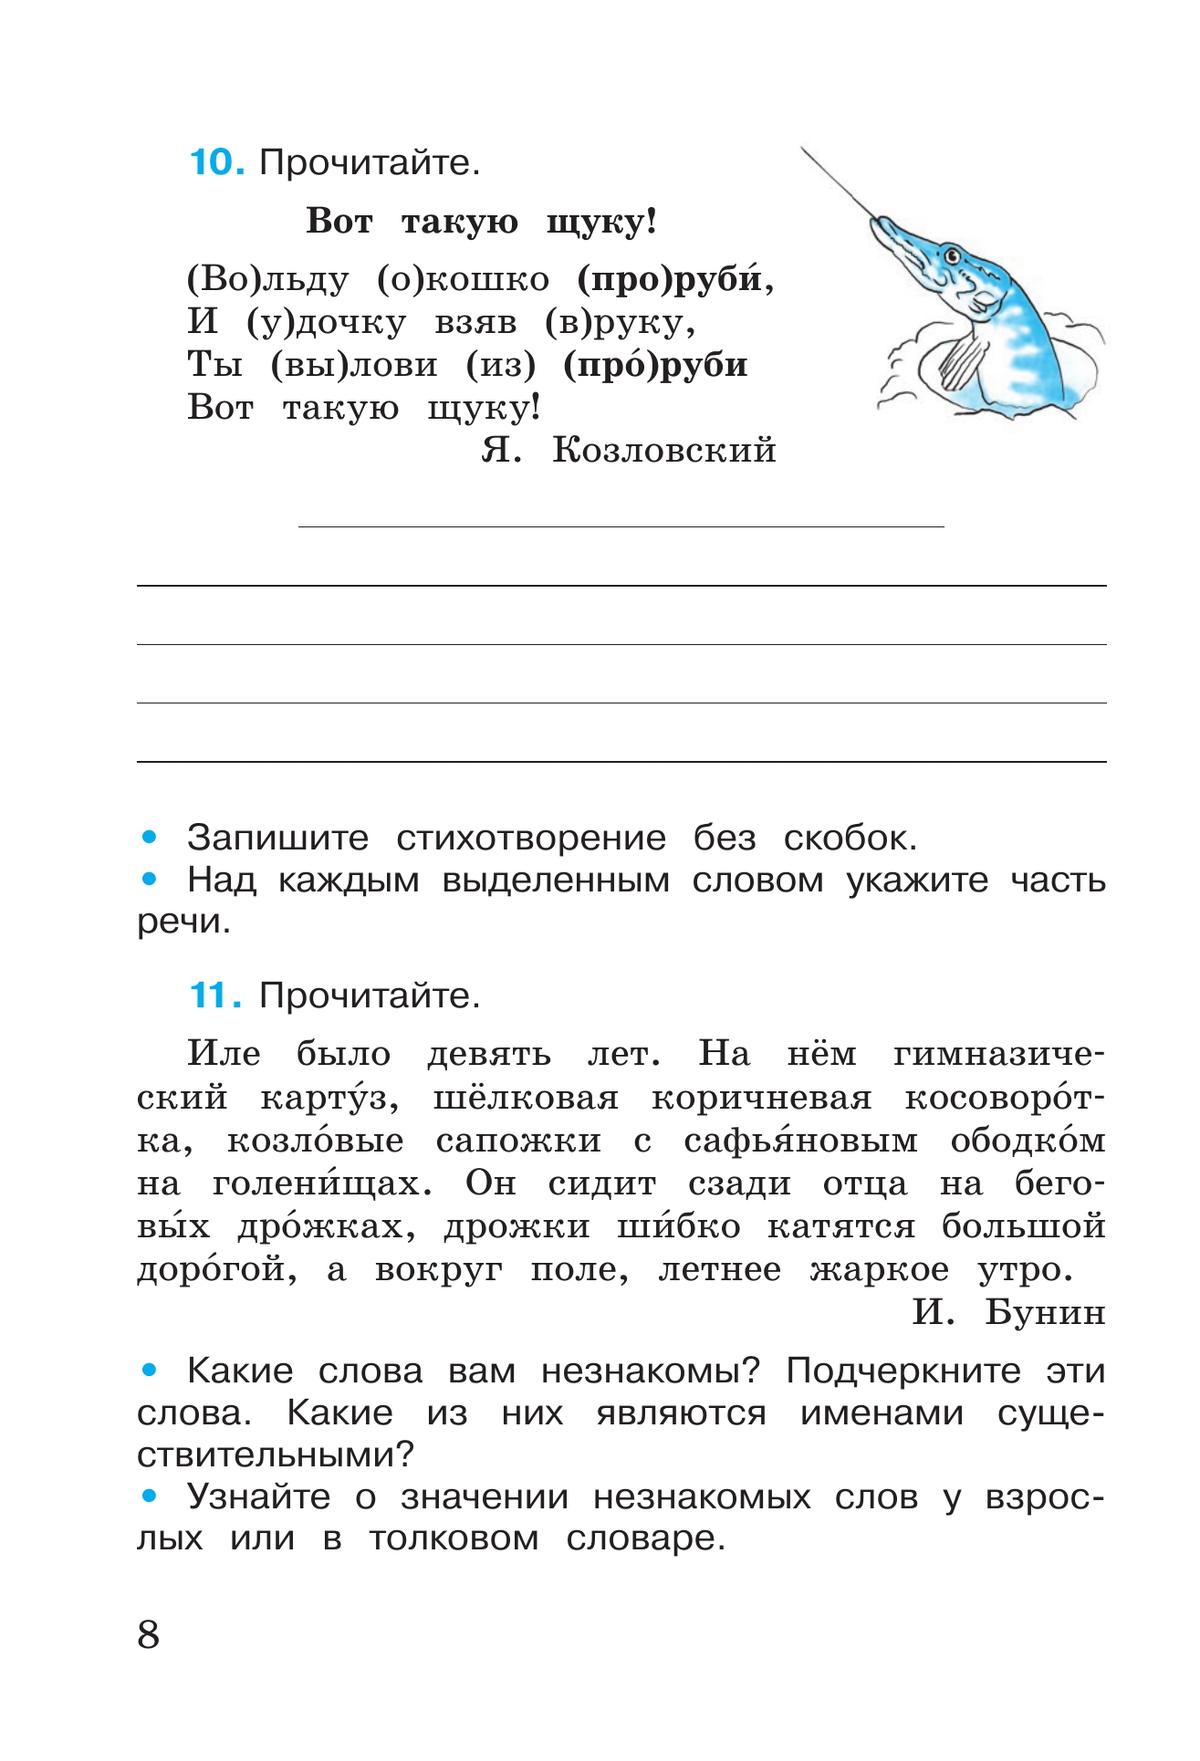 Русский язык. Рабочая тетрадь. 3 класс. В 2 частях. Часть 2 11